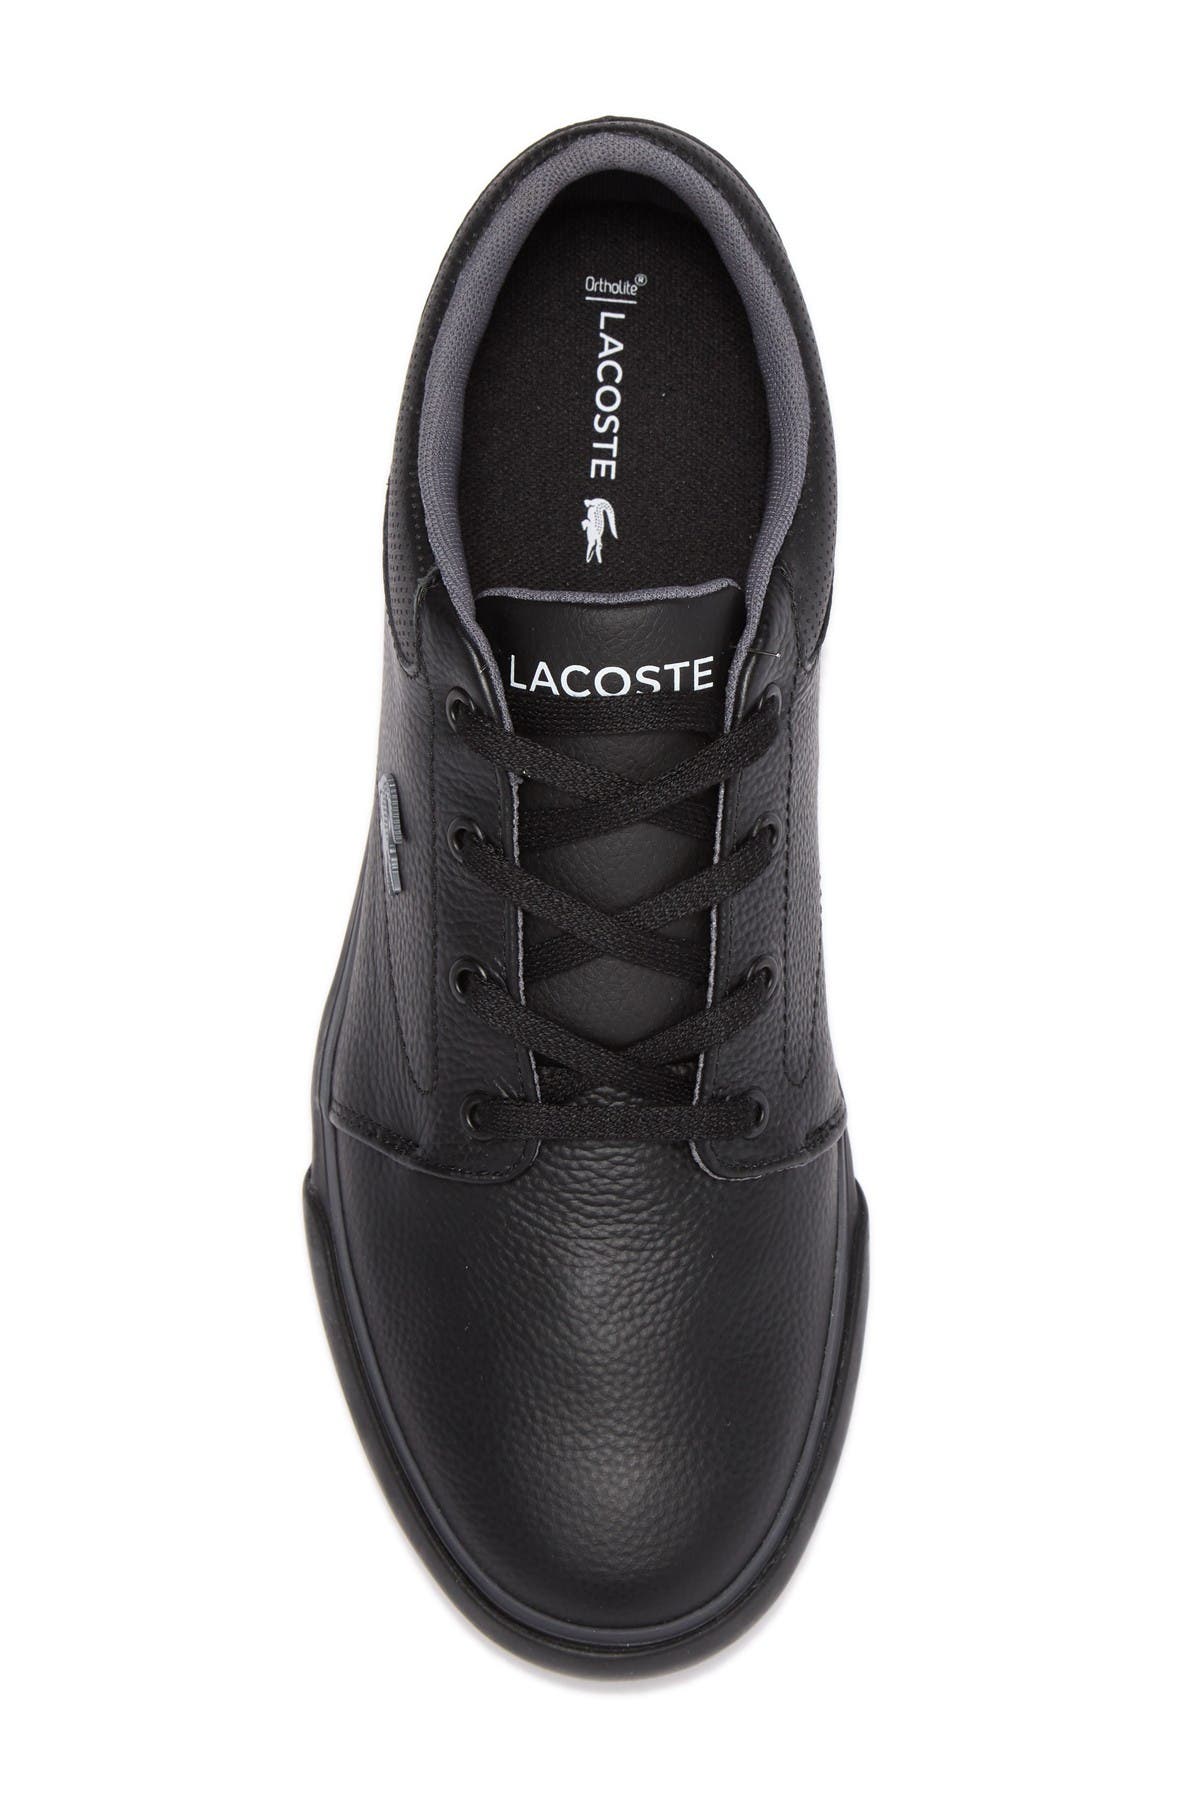 Lacoste | Minzah 119 Leather Sneaker 